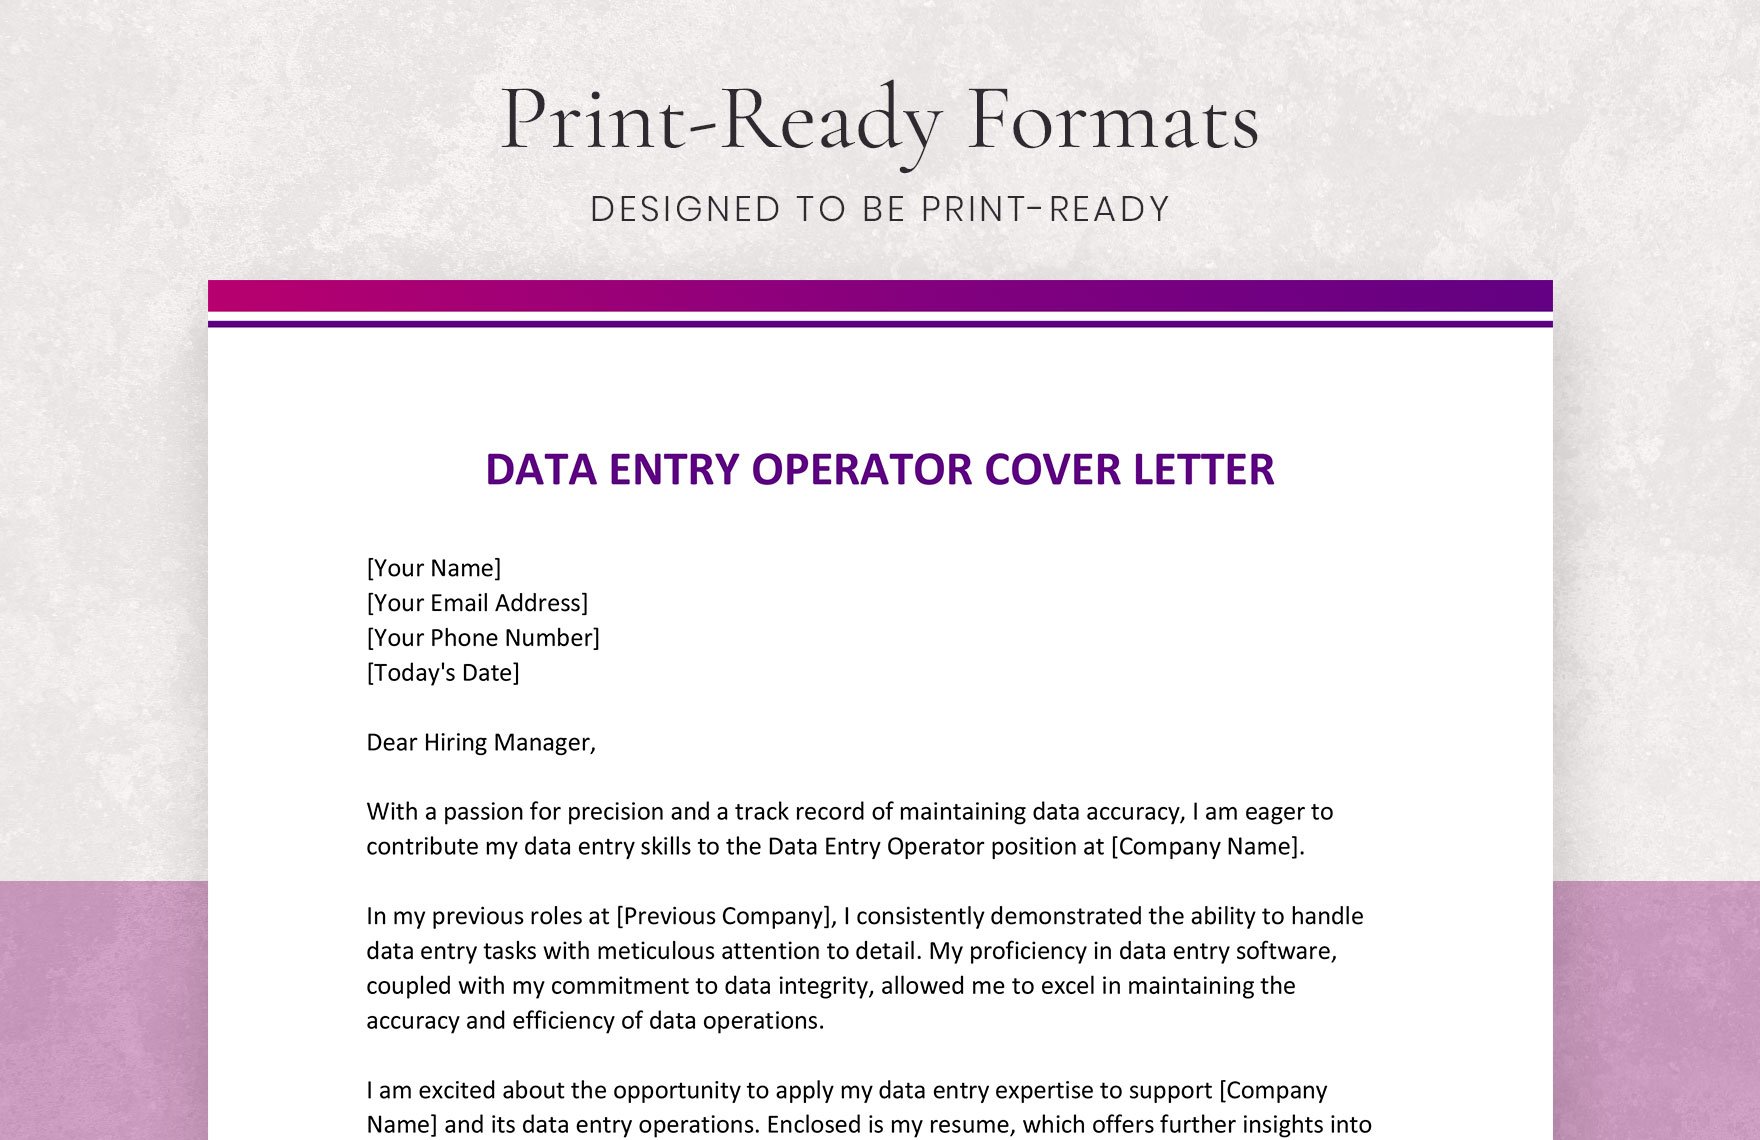 Data Entry Operator Cover Letter